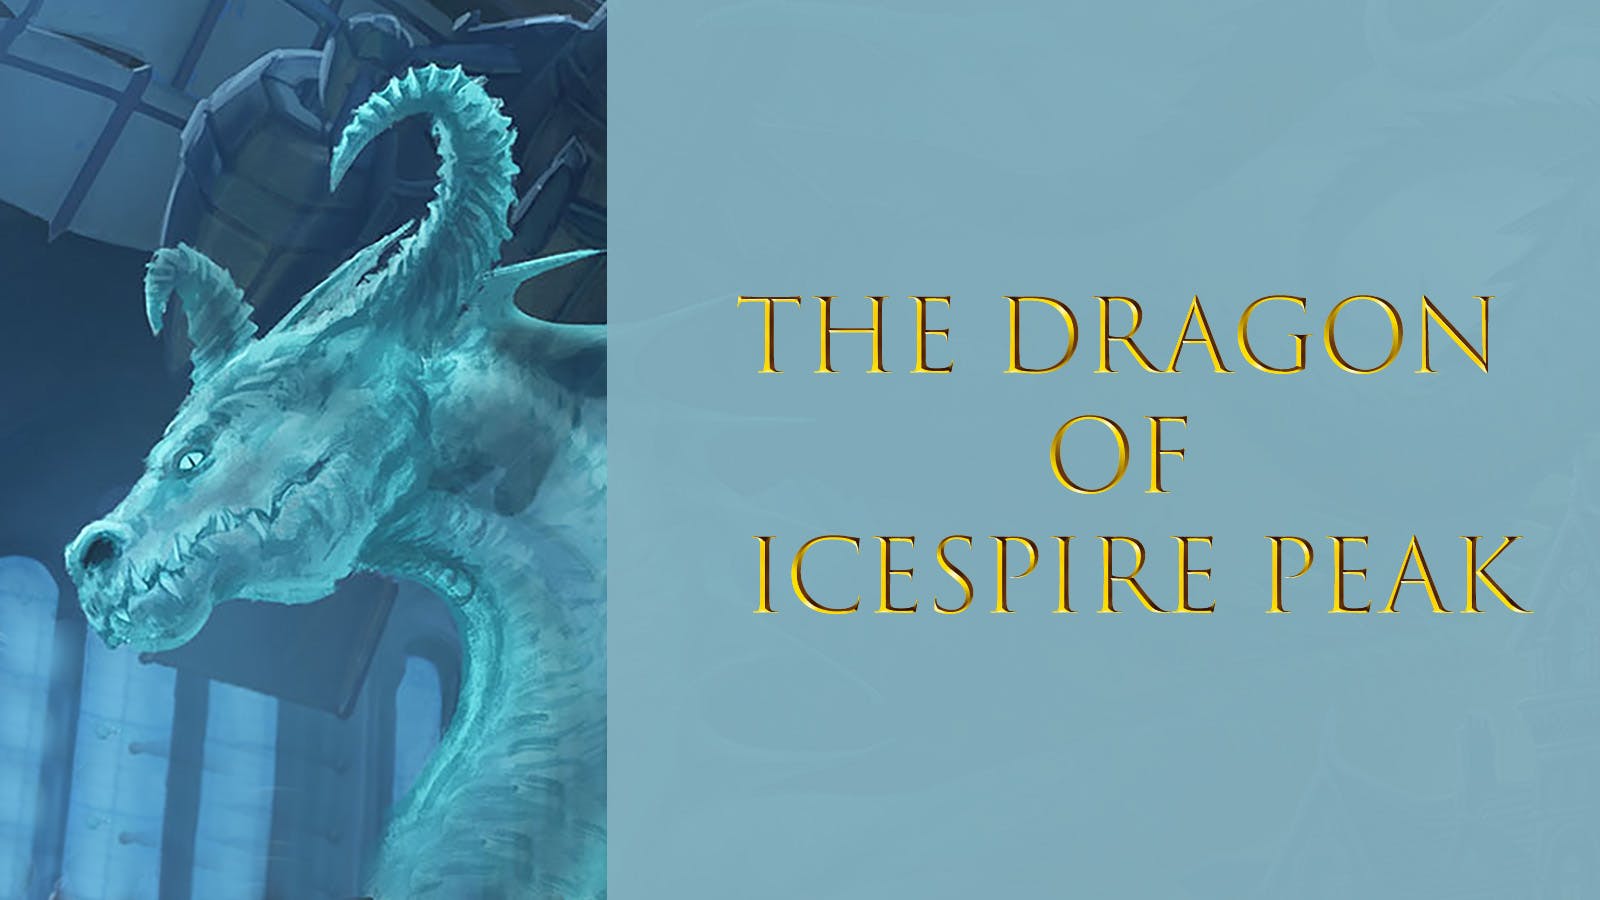 The Dragon of Icespire Peak